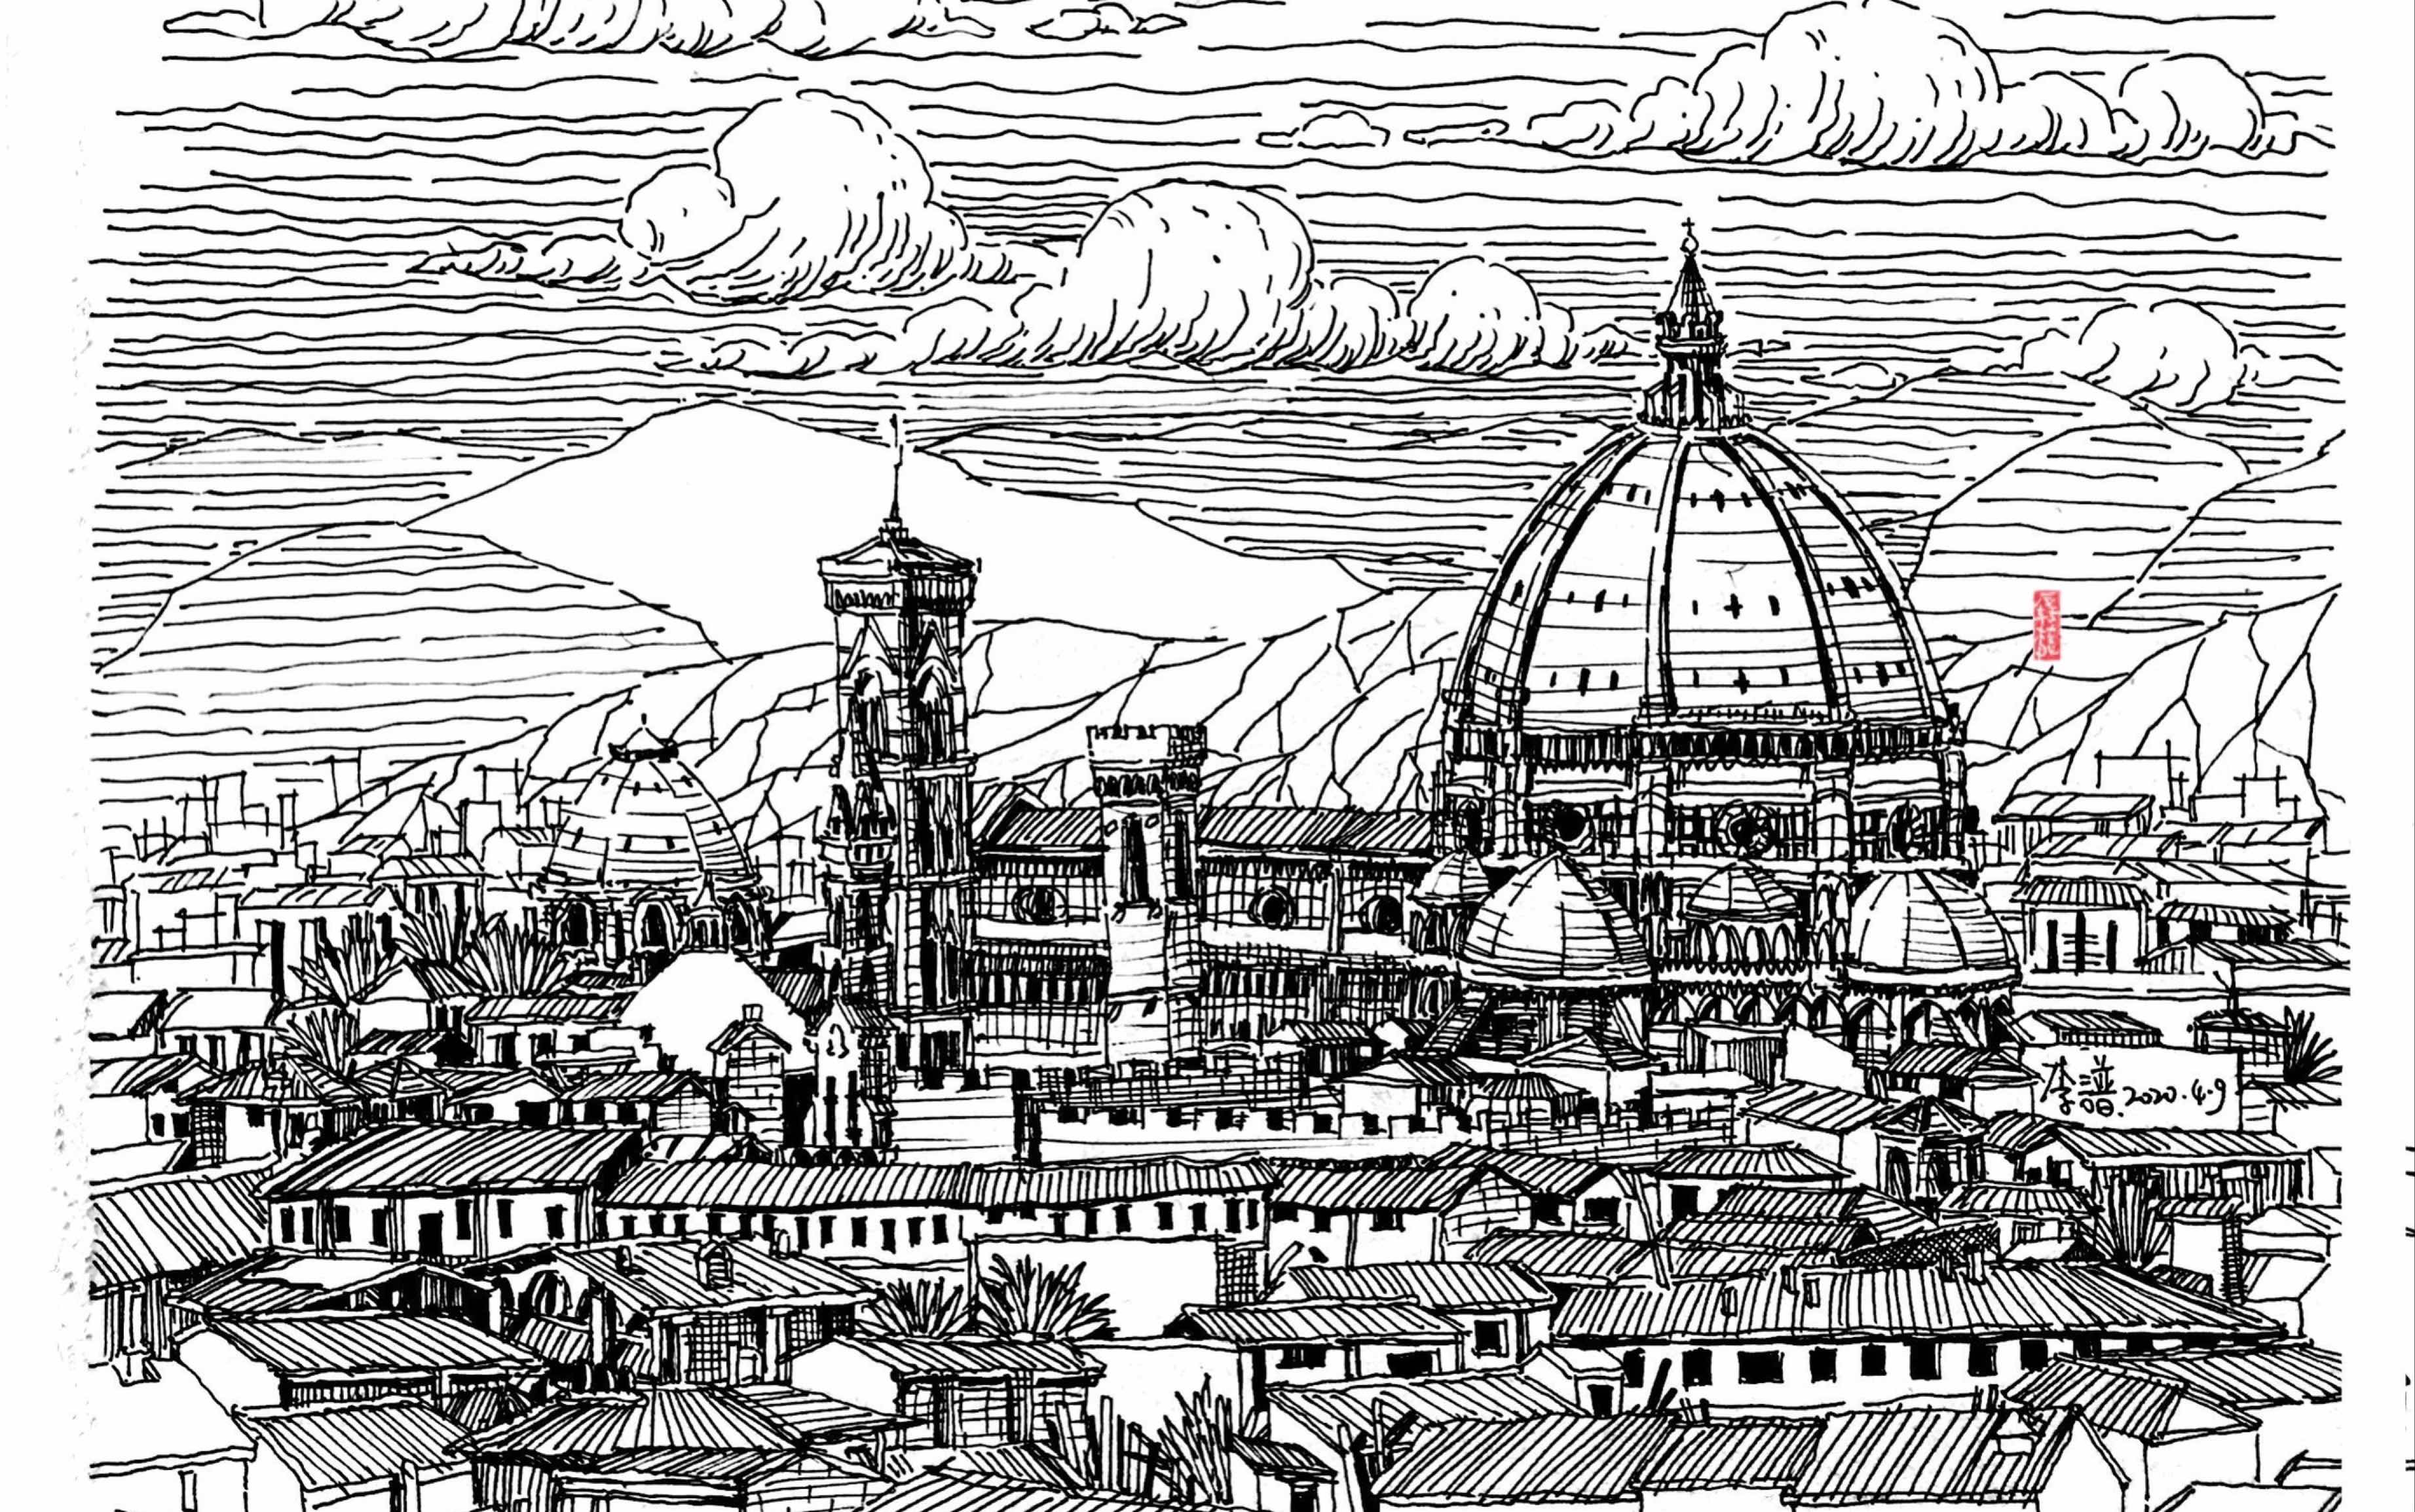 佛罗伦萨大教堂手绘图片